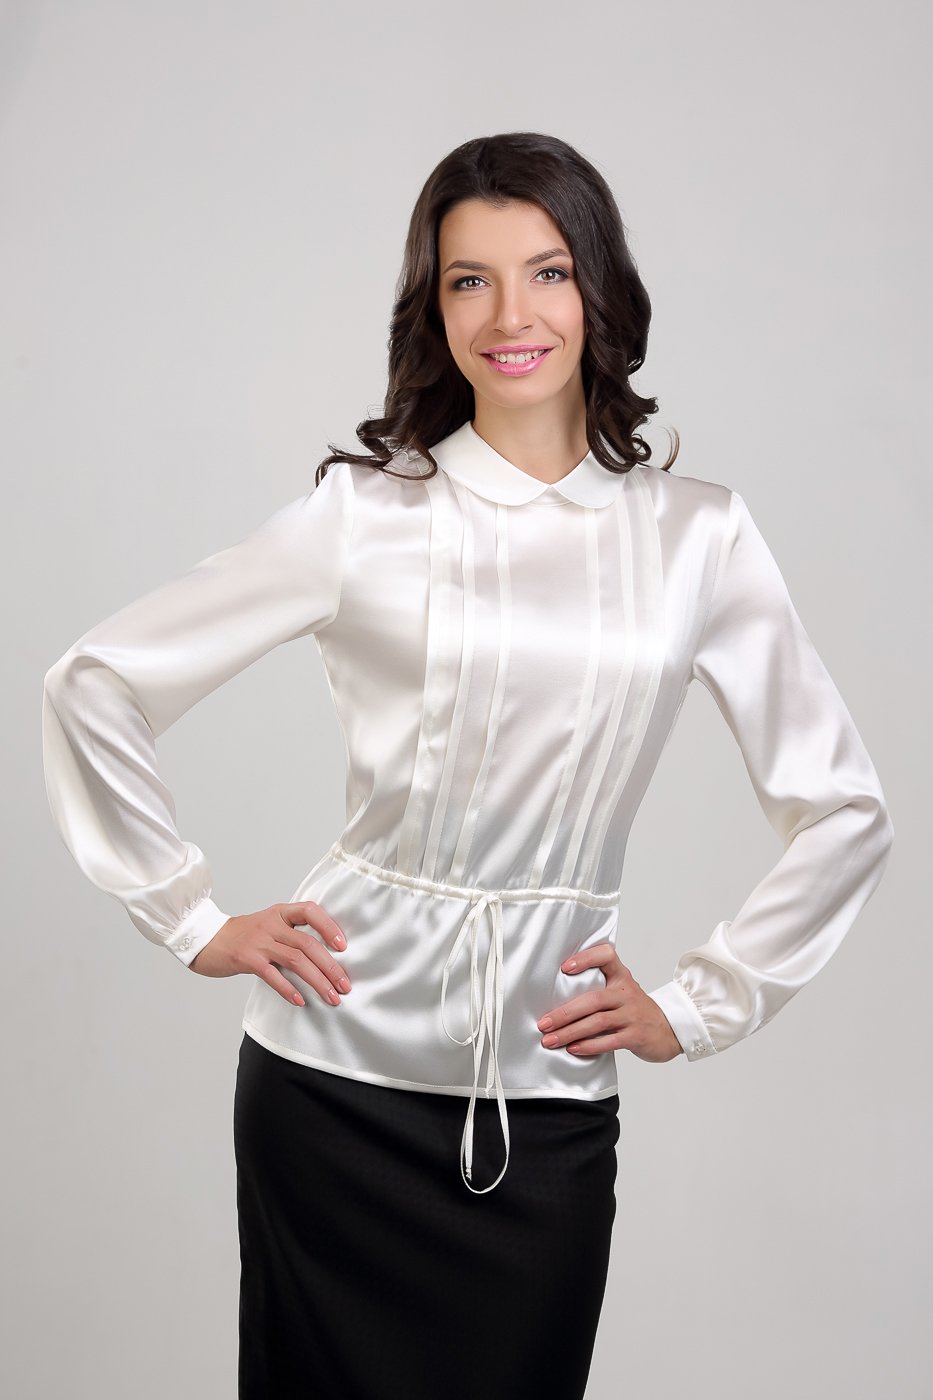 Женские блузки производство. Нарядные блузки для женщин. Белая блузка. Белая нарядная блузка для женщин. Женщина в блузке.